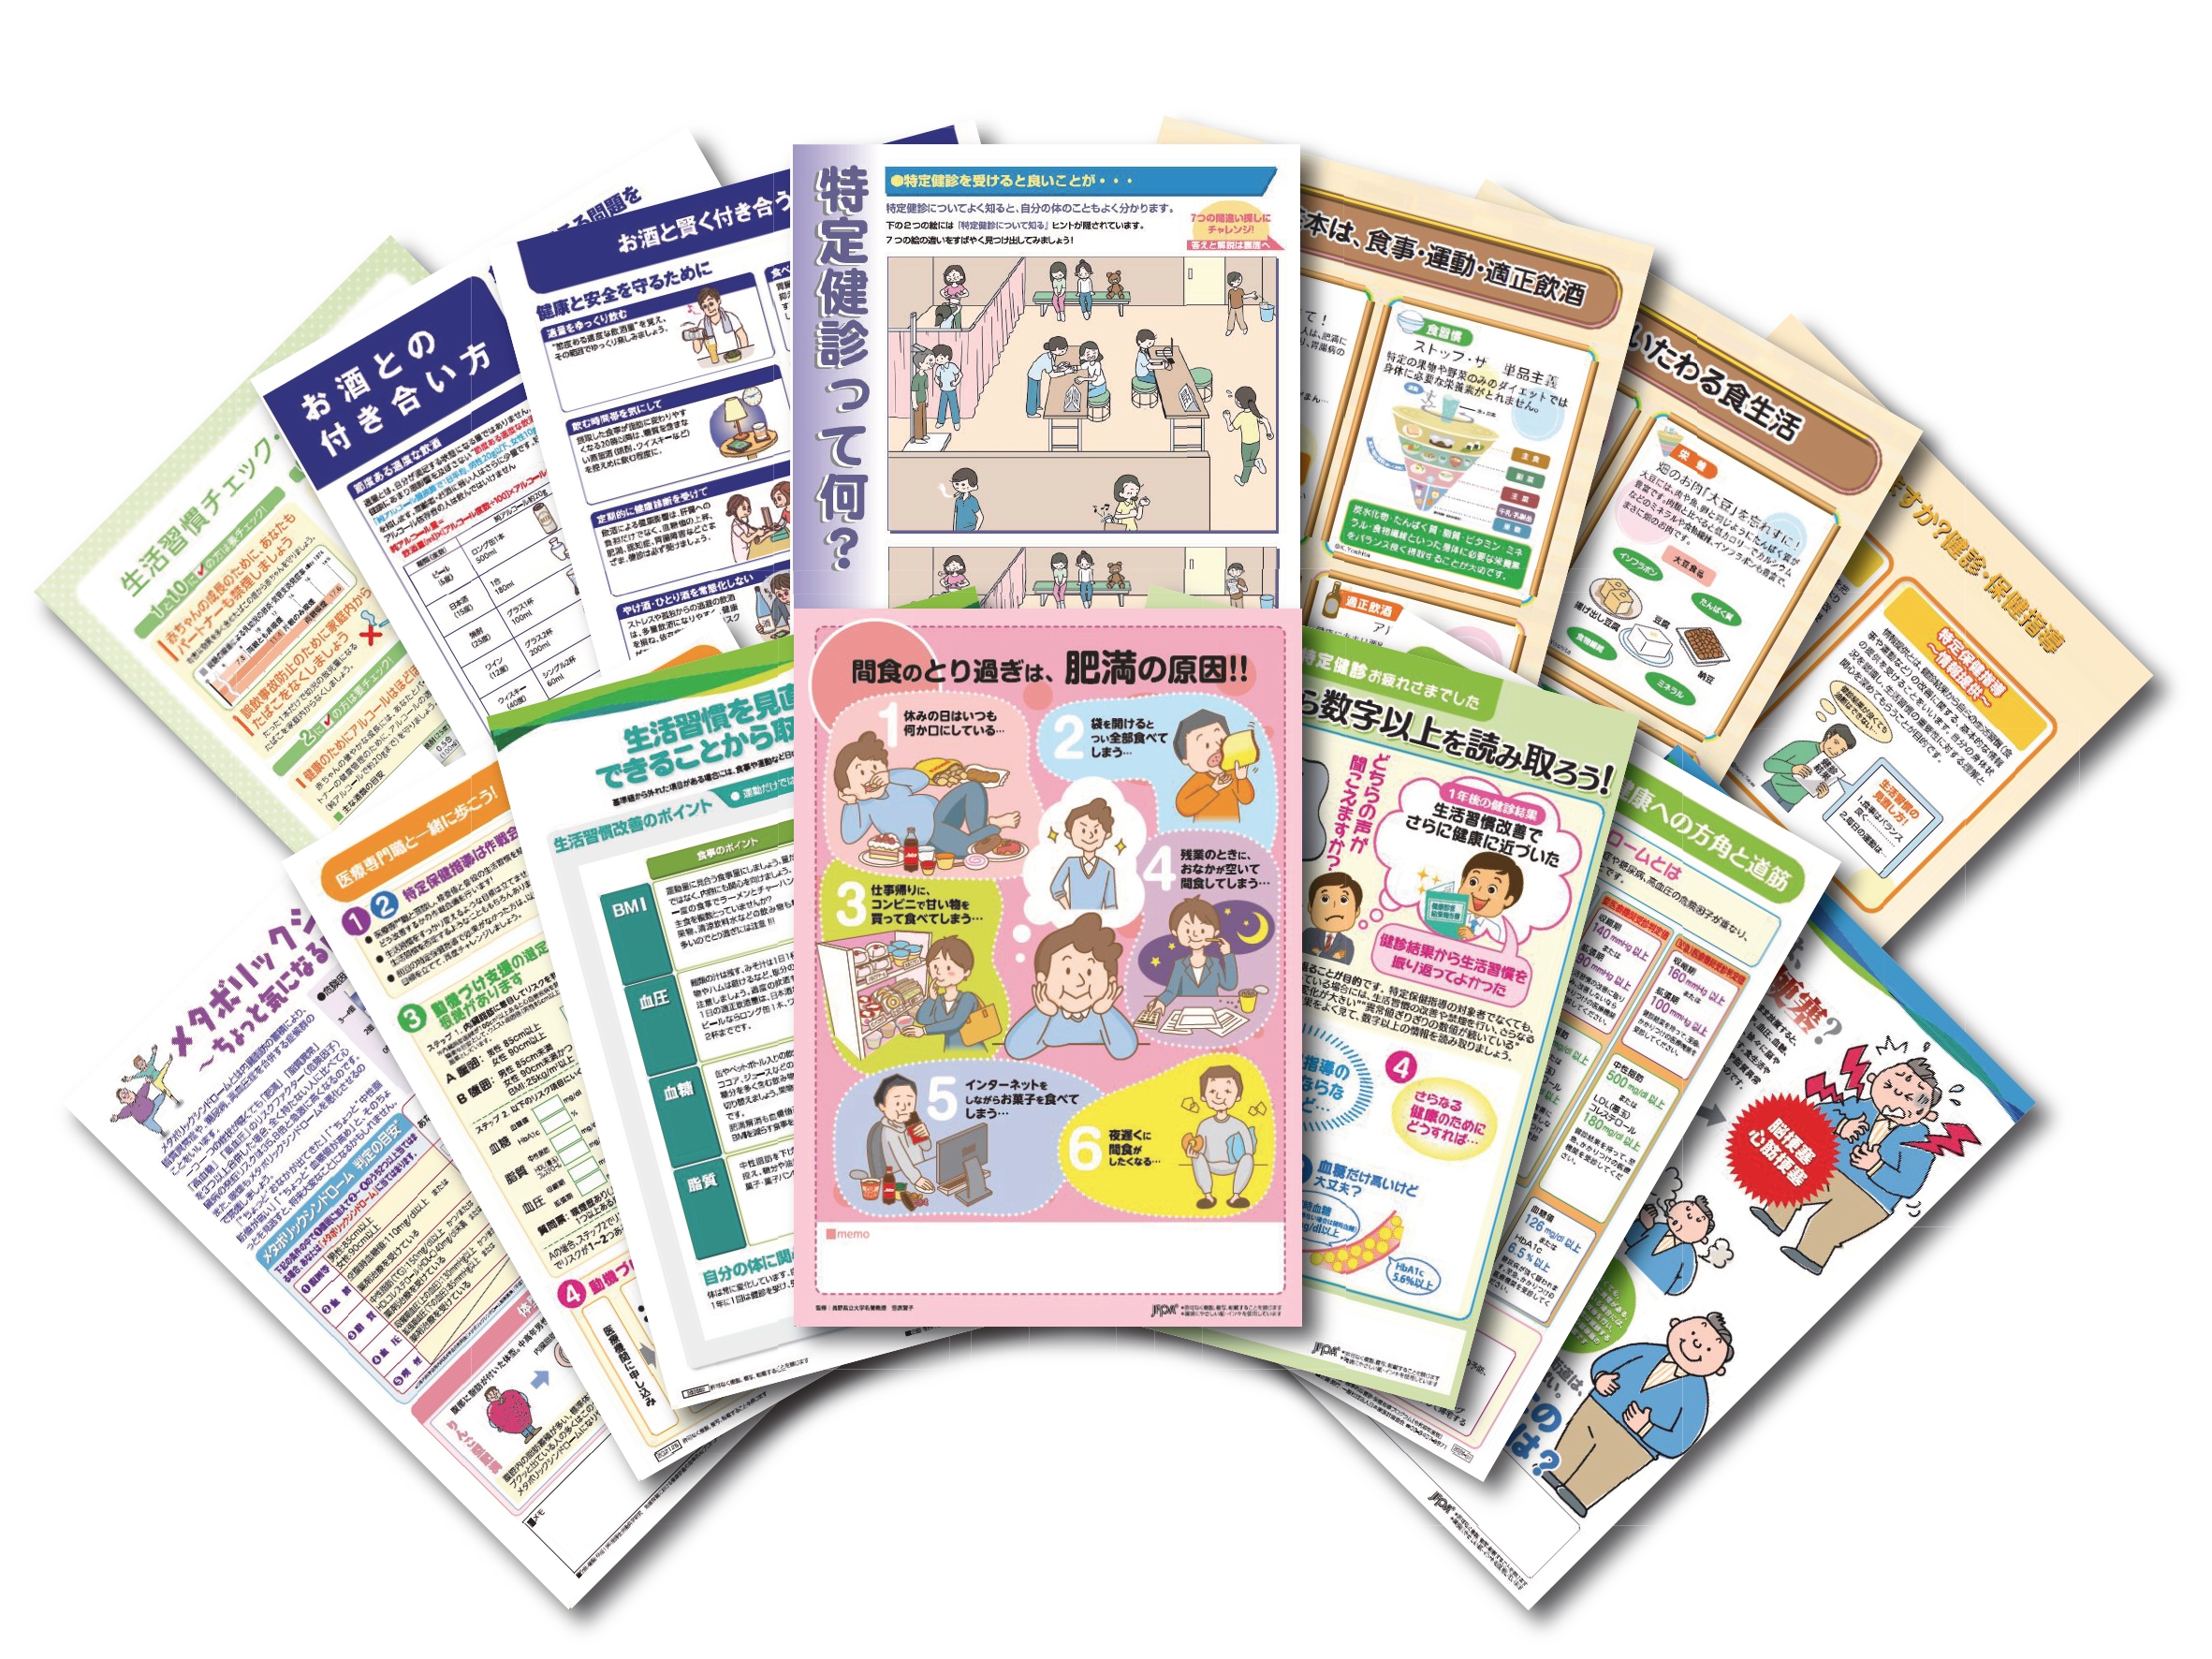 特定健診、健康日本21関連教材の改訂について